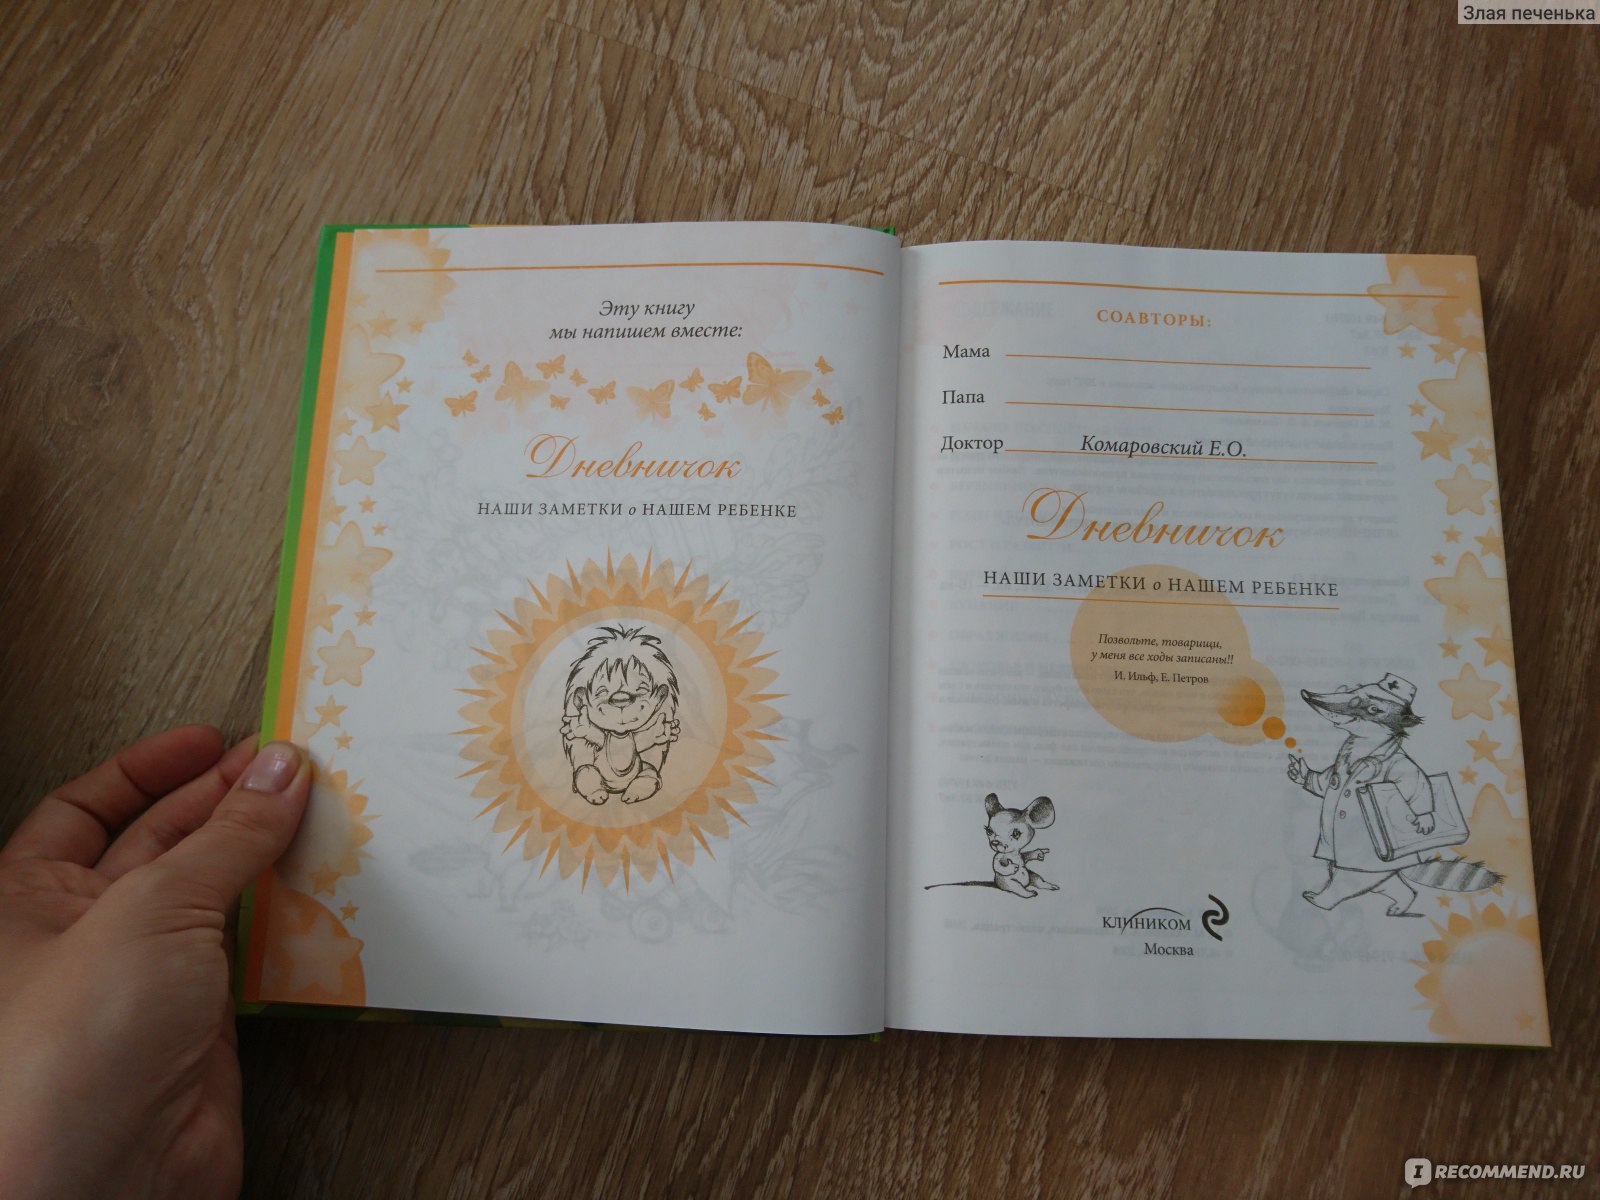 Комаровский дневничок наши заметки о нашем ребенке